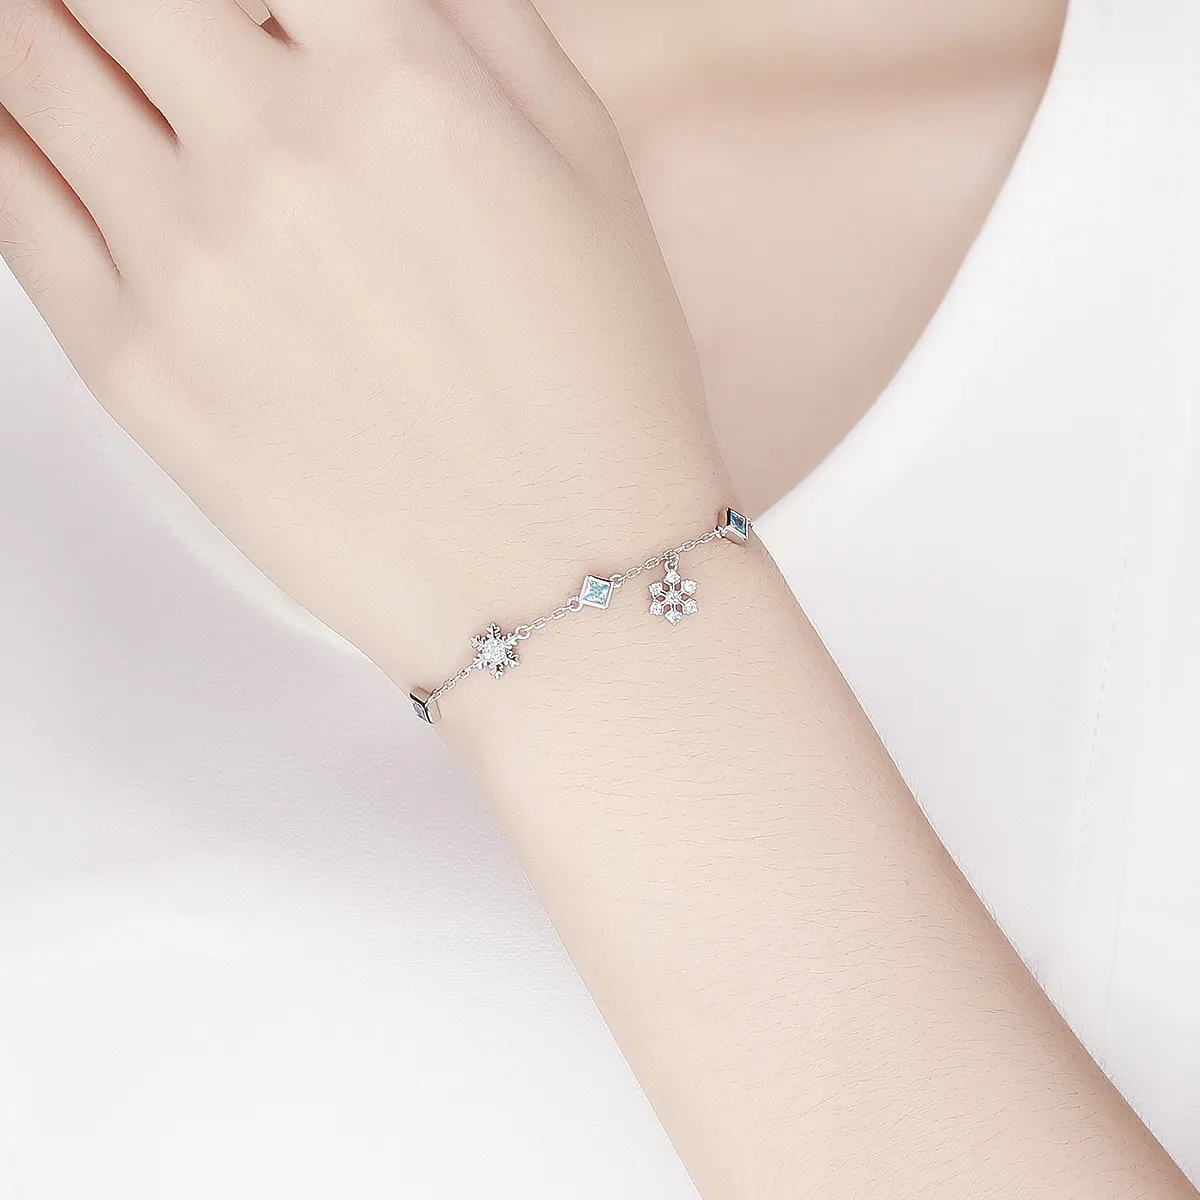 Pandora Style Silver Dancing Snowflake bracelet - BSB001